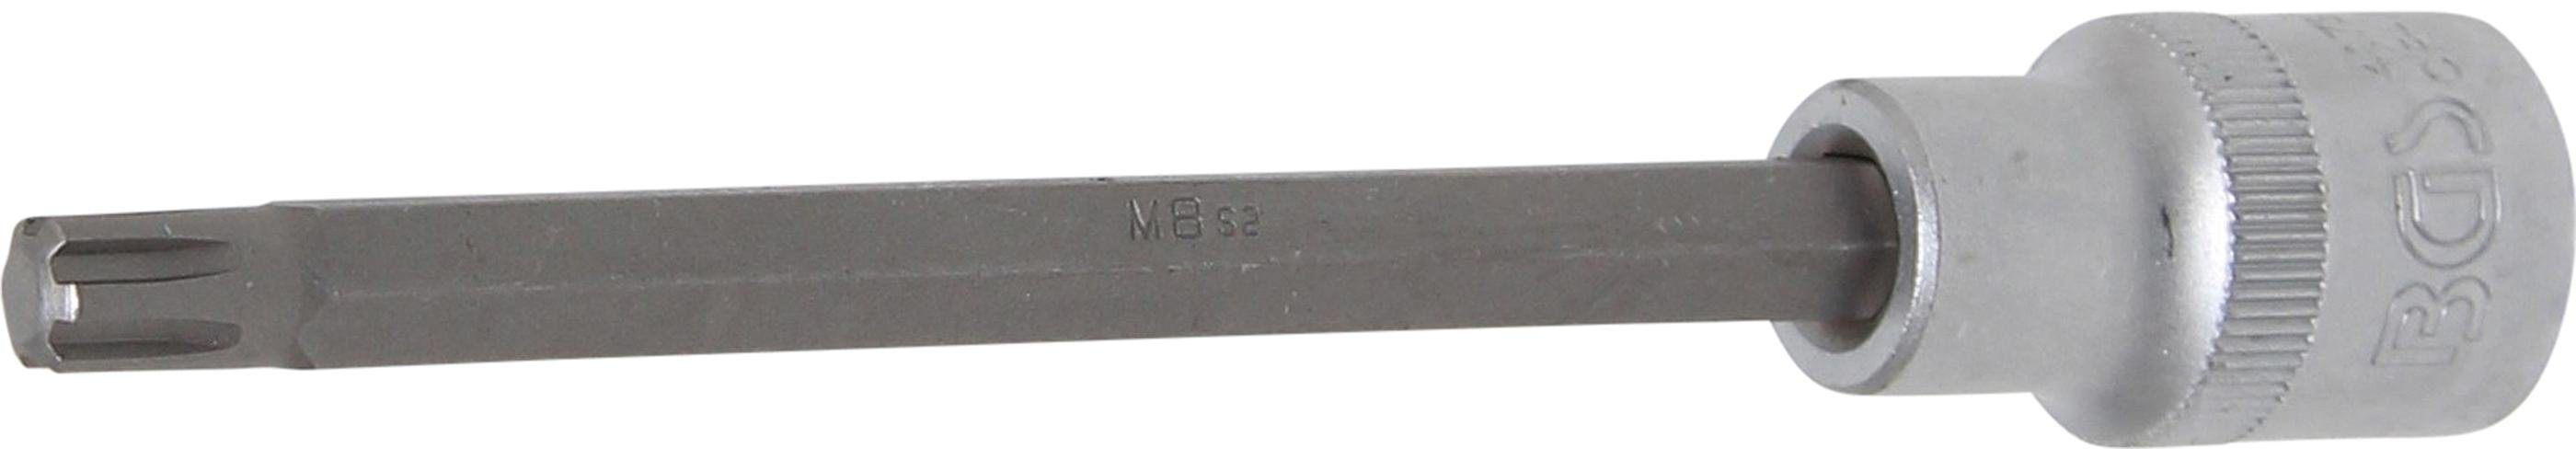 BGS technic Bit-Schraubendreher Bit-Einsatz, Länge 140 mm, Antrieb Innenvierkant 12,5 mm (1/2), Keil-Profil (für RIBE) M8